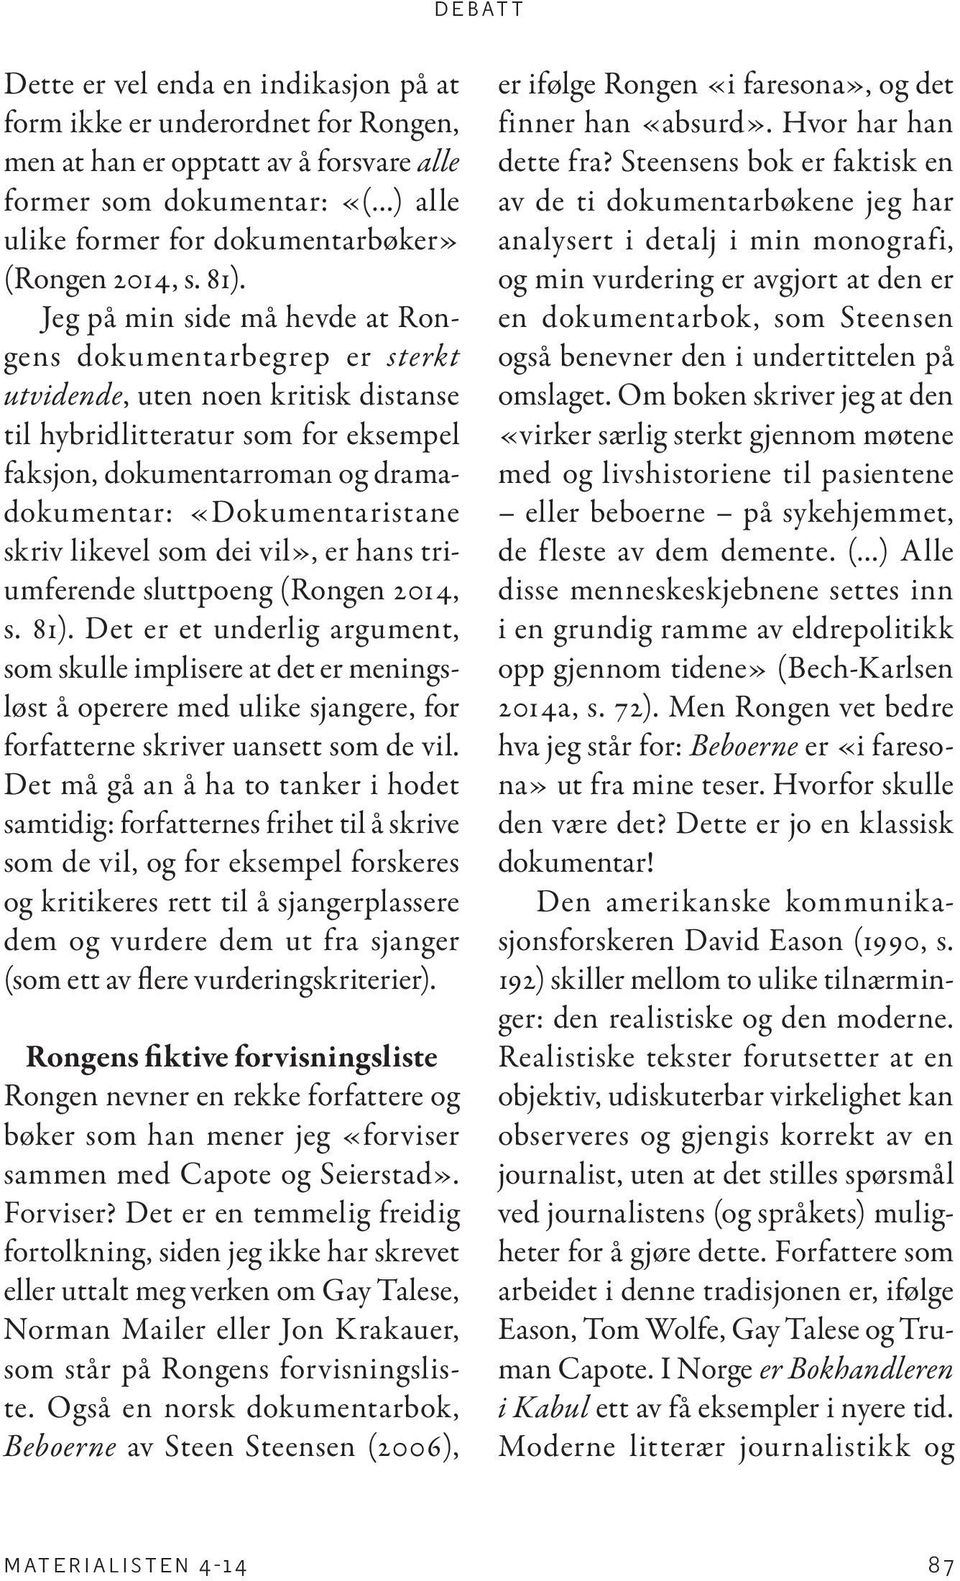 «Dokumentaristane skriv likevel som dei vil», er hans triumferende sluttpoeng (Rongen 2014, s. 81).